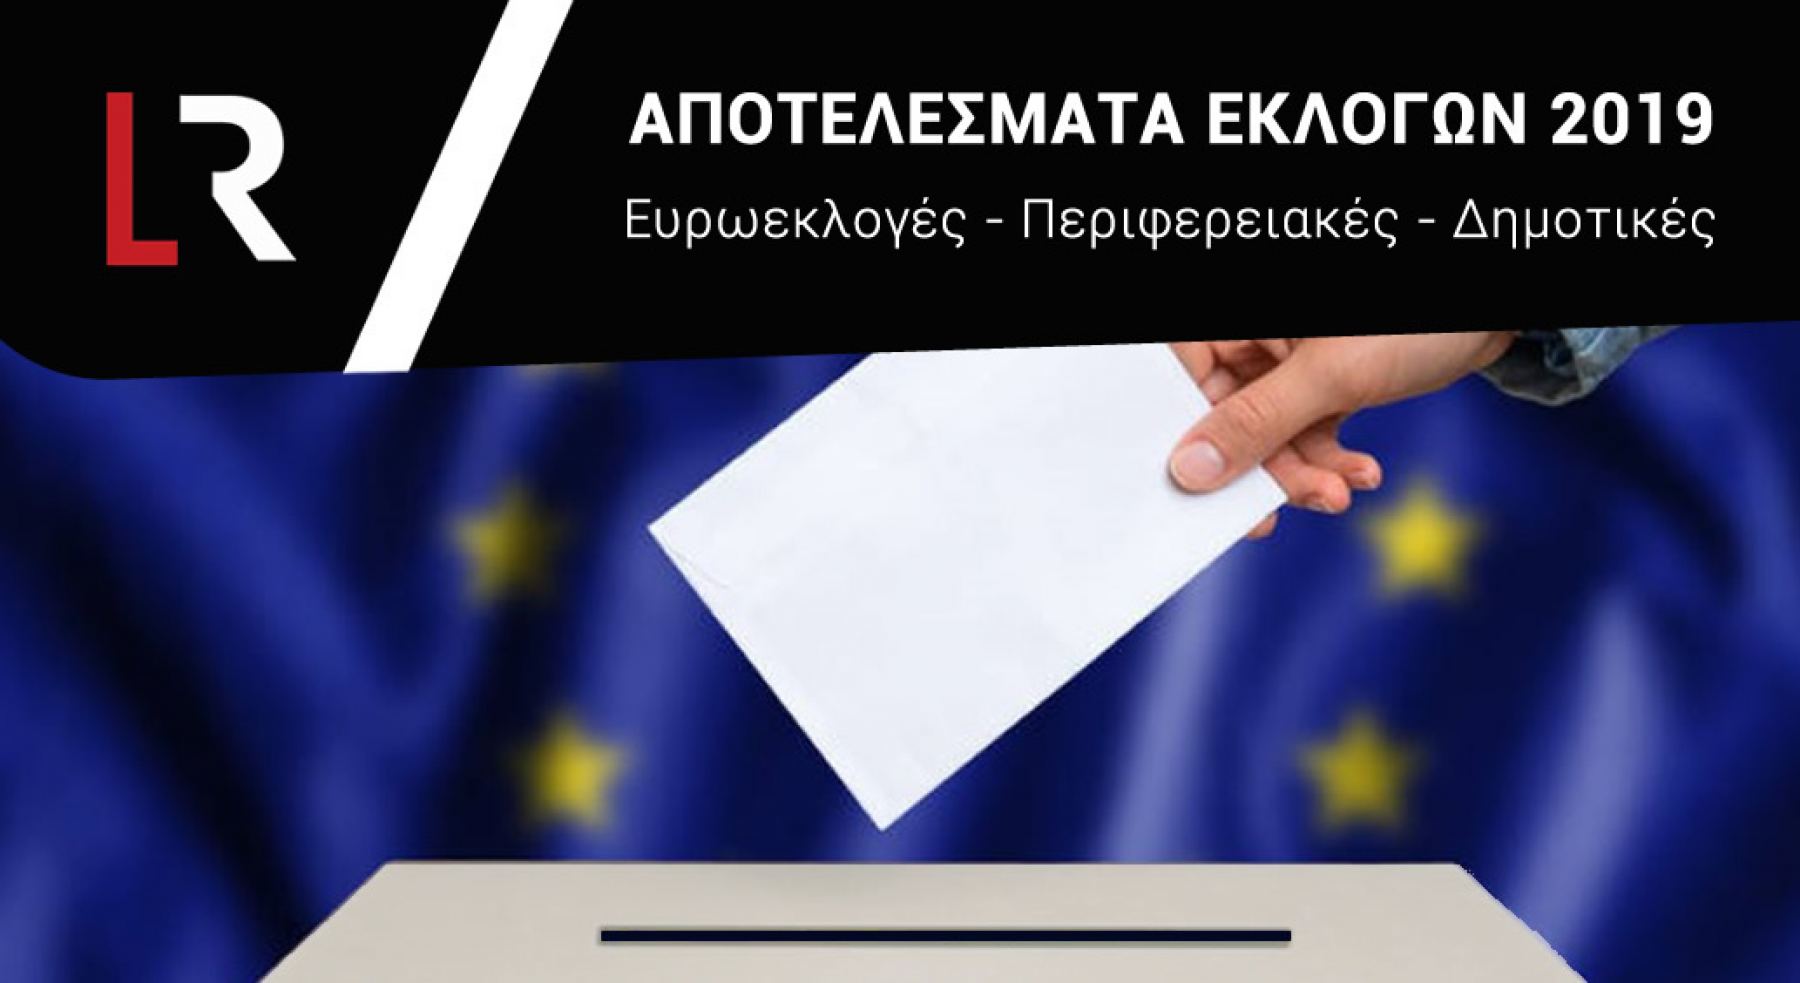 Δείτε Live όλα τα αποτελέσματα των Εκλογών 2019 - Ευρωεκλογές - Περιφερειακές - Δημοτικές